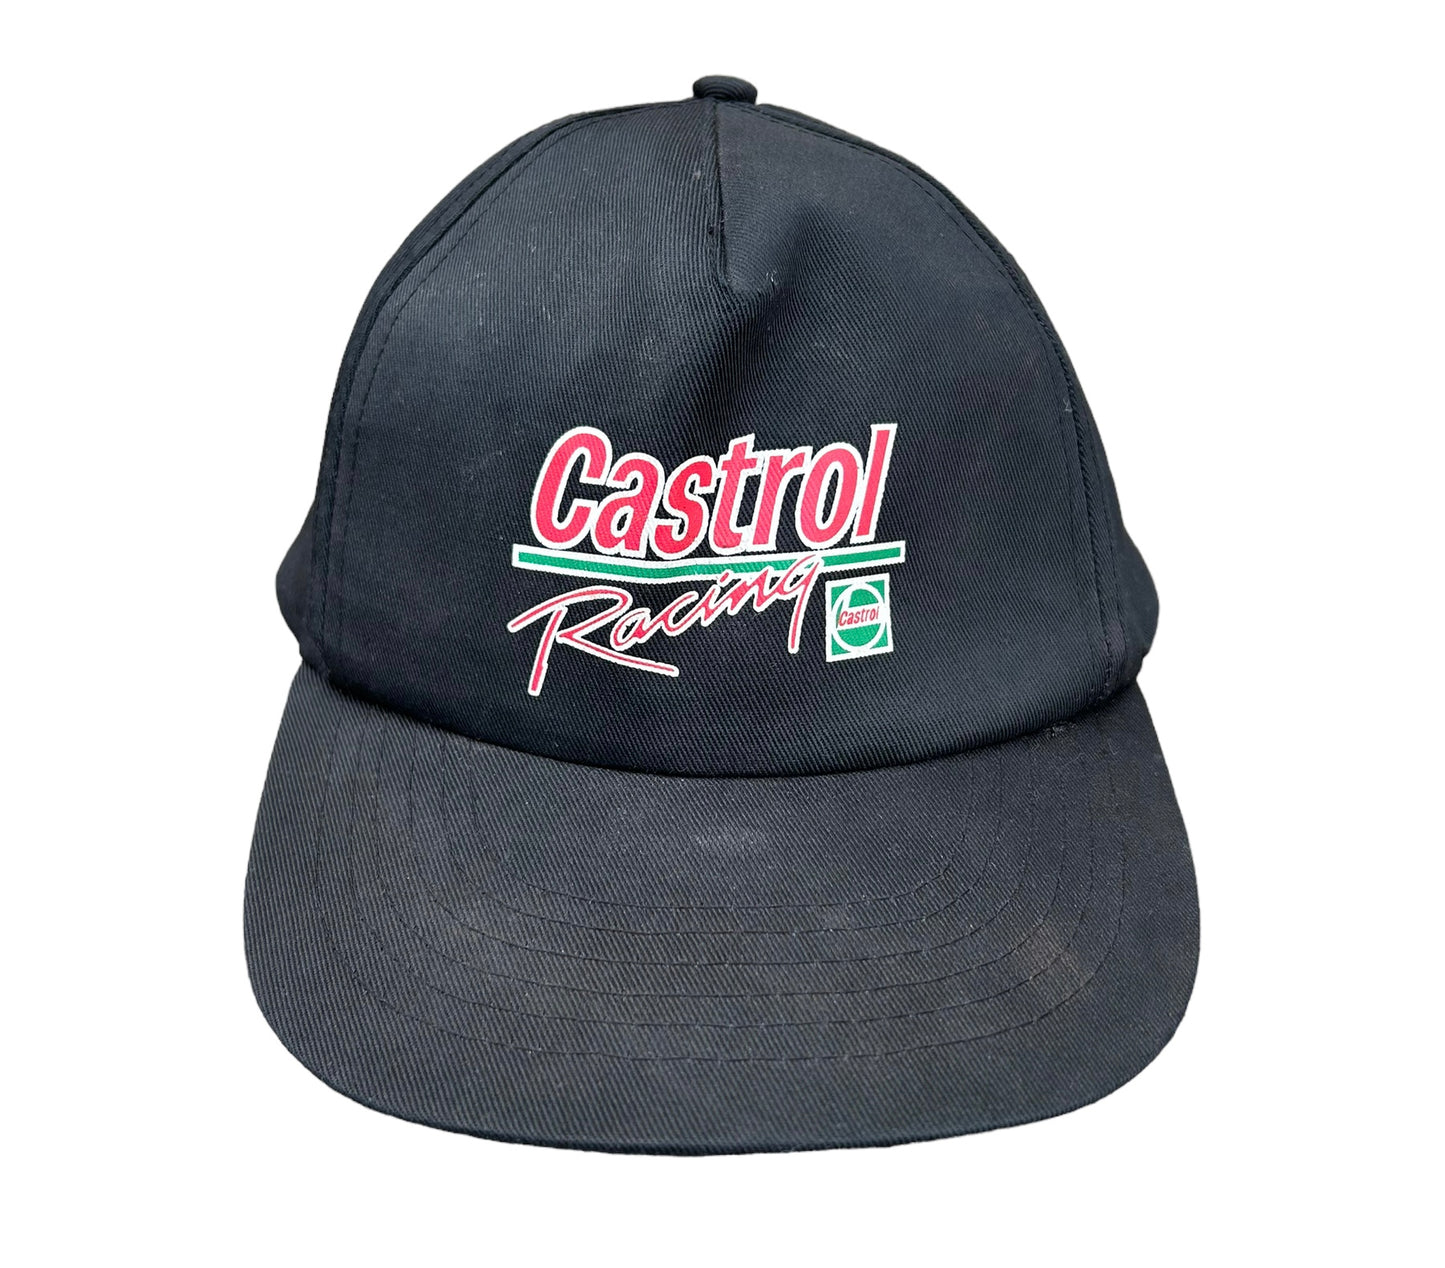 Vintage Castrol Racing Cap